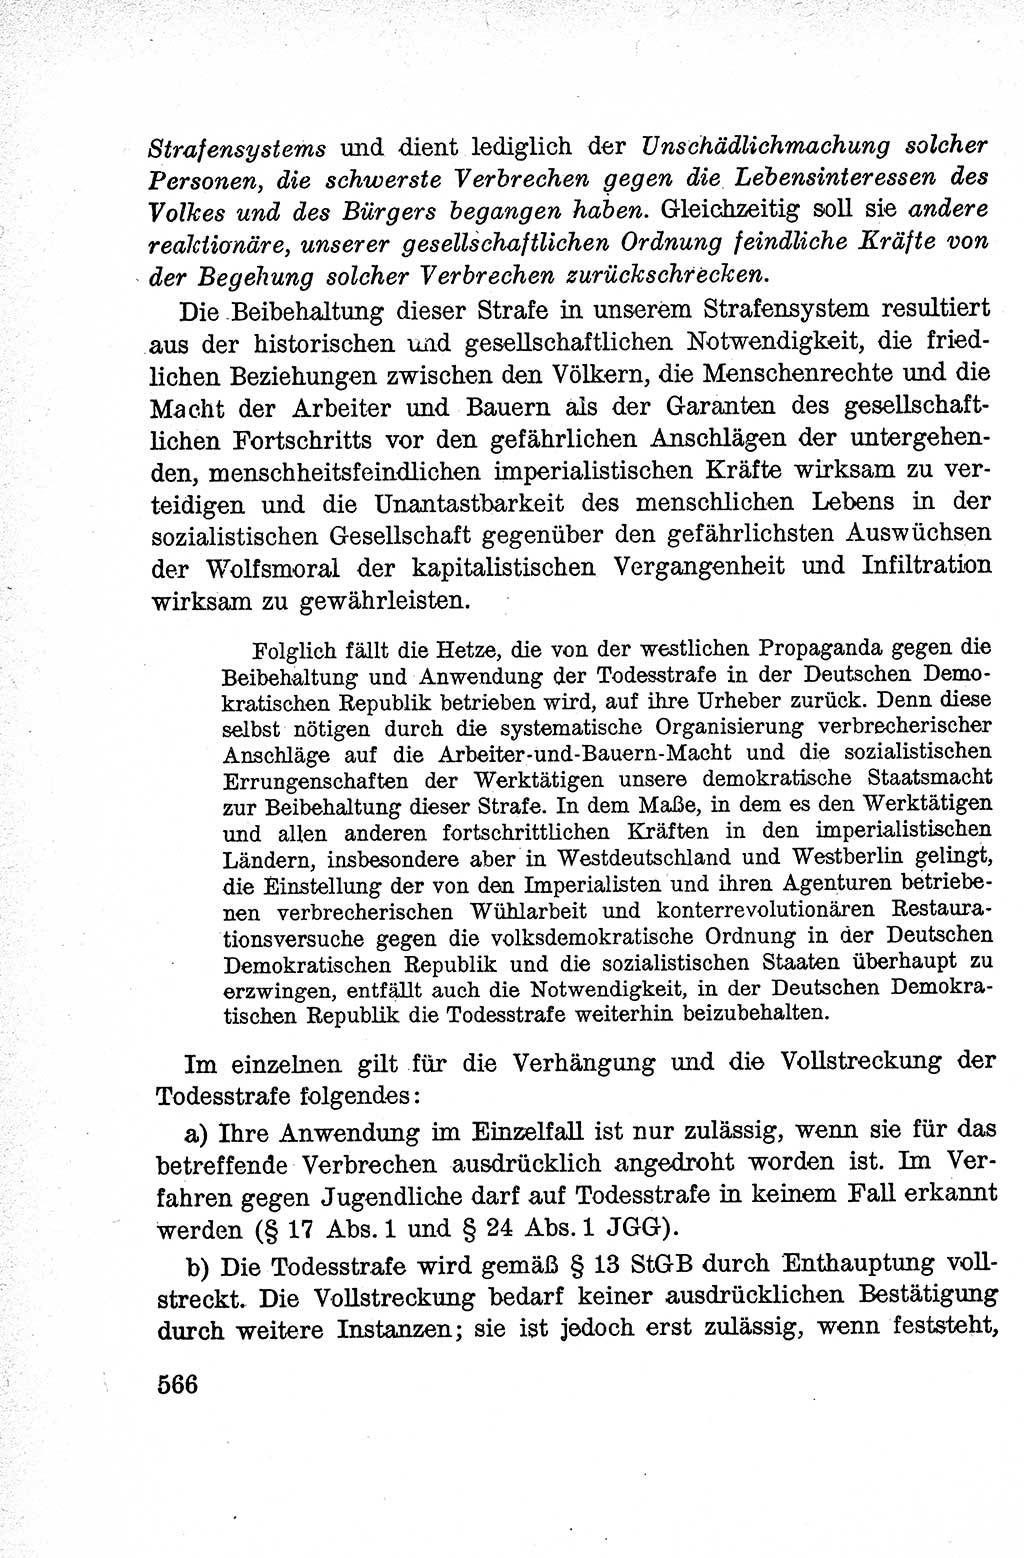 Lehrbuch des Strafrechts der Deutschen Demokratischen Republik (DDR), Allgemeiner Teil 1959, Seite 566 (Lb. Strafr. DDR AT 1959, S. 566)